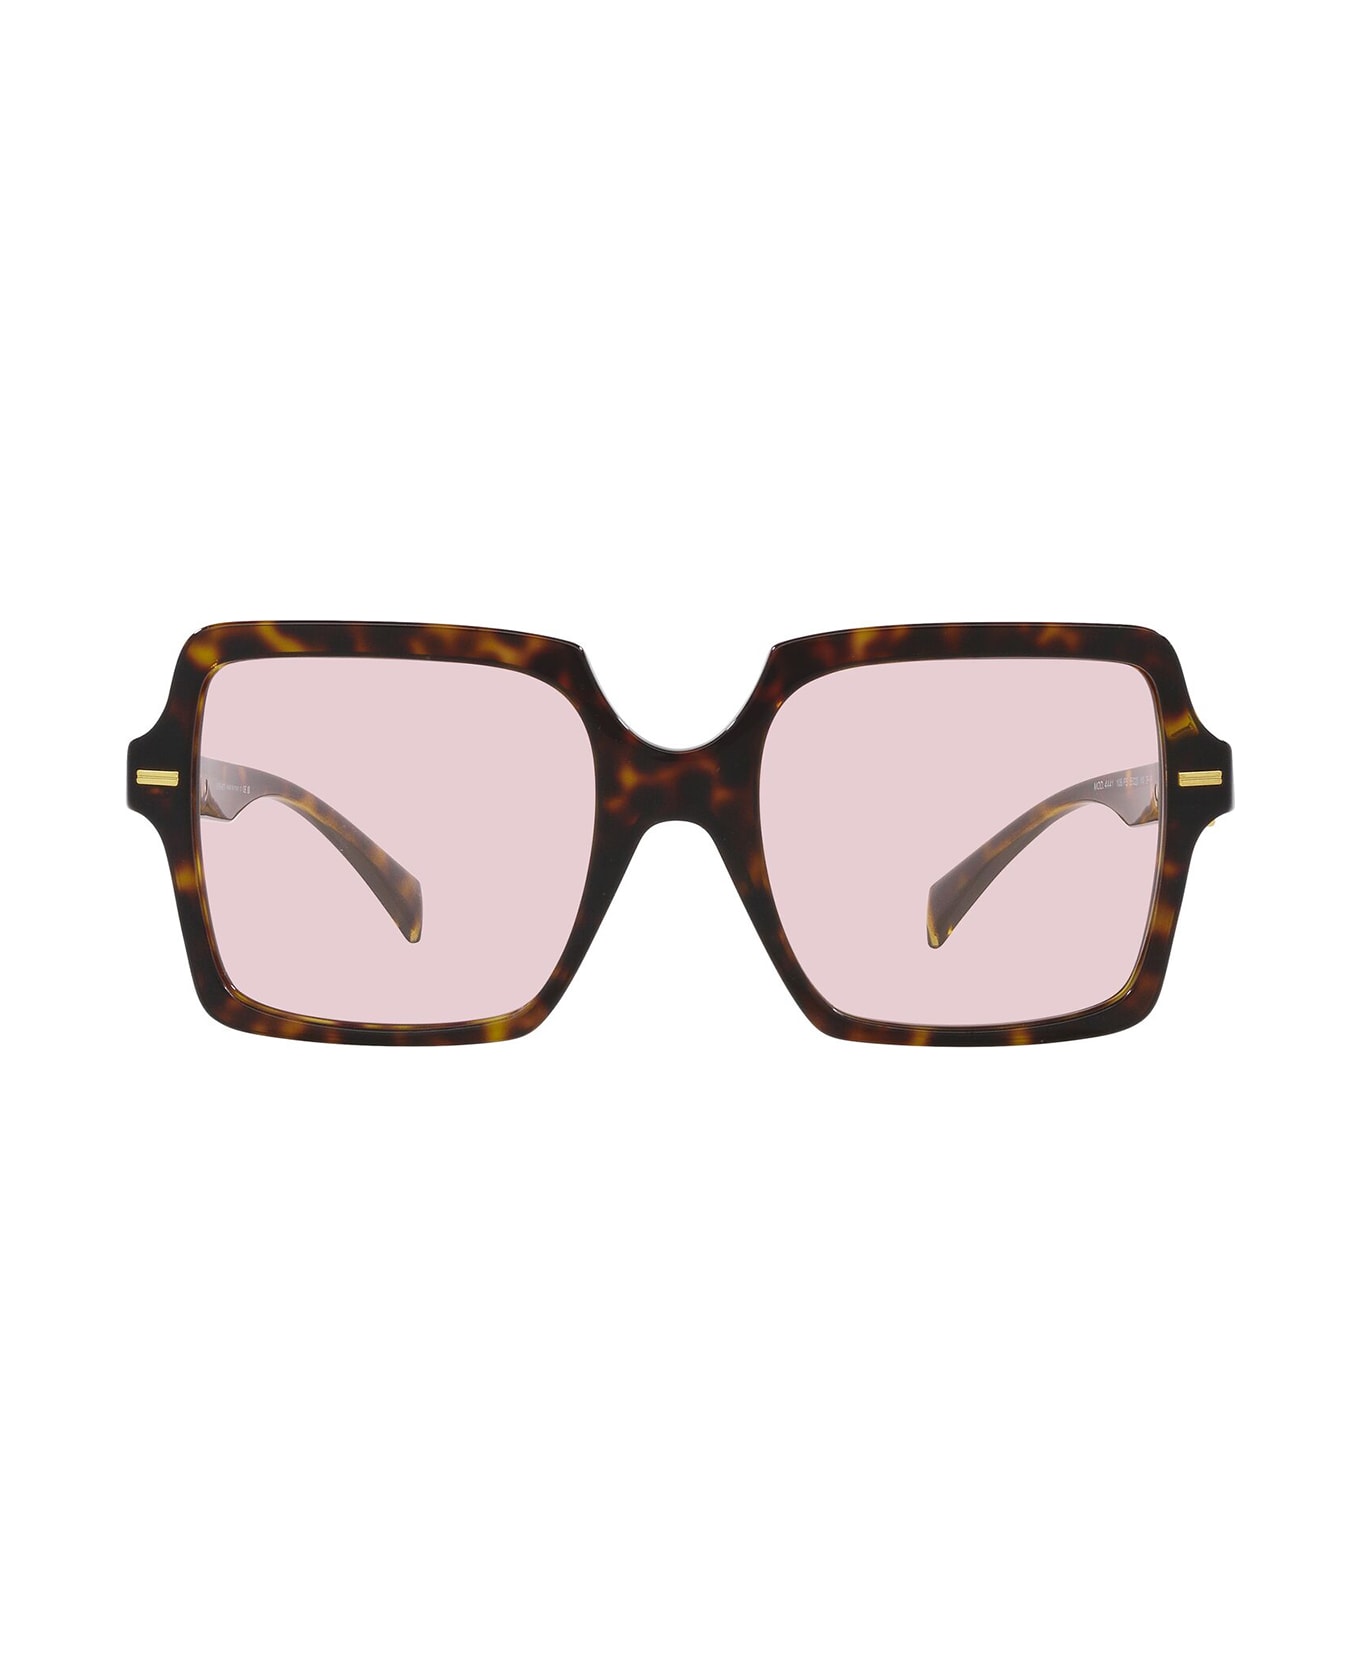 Versace Eyewear Ve4441 Havana Sunglasses - Havana